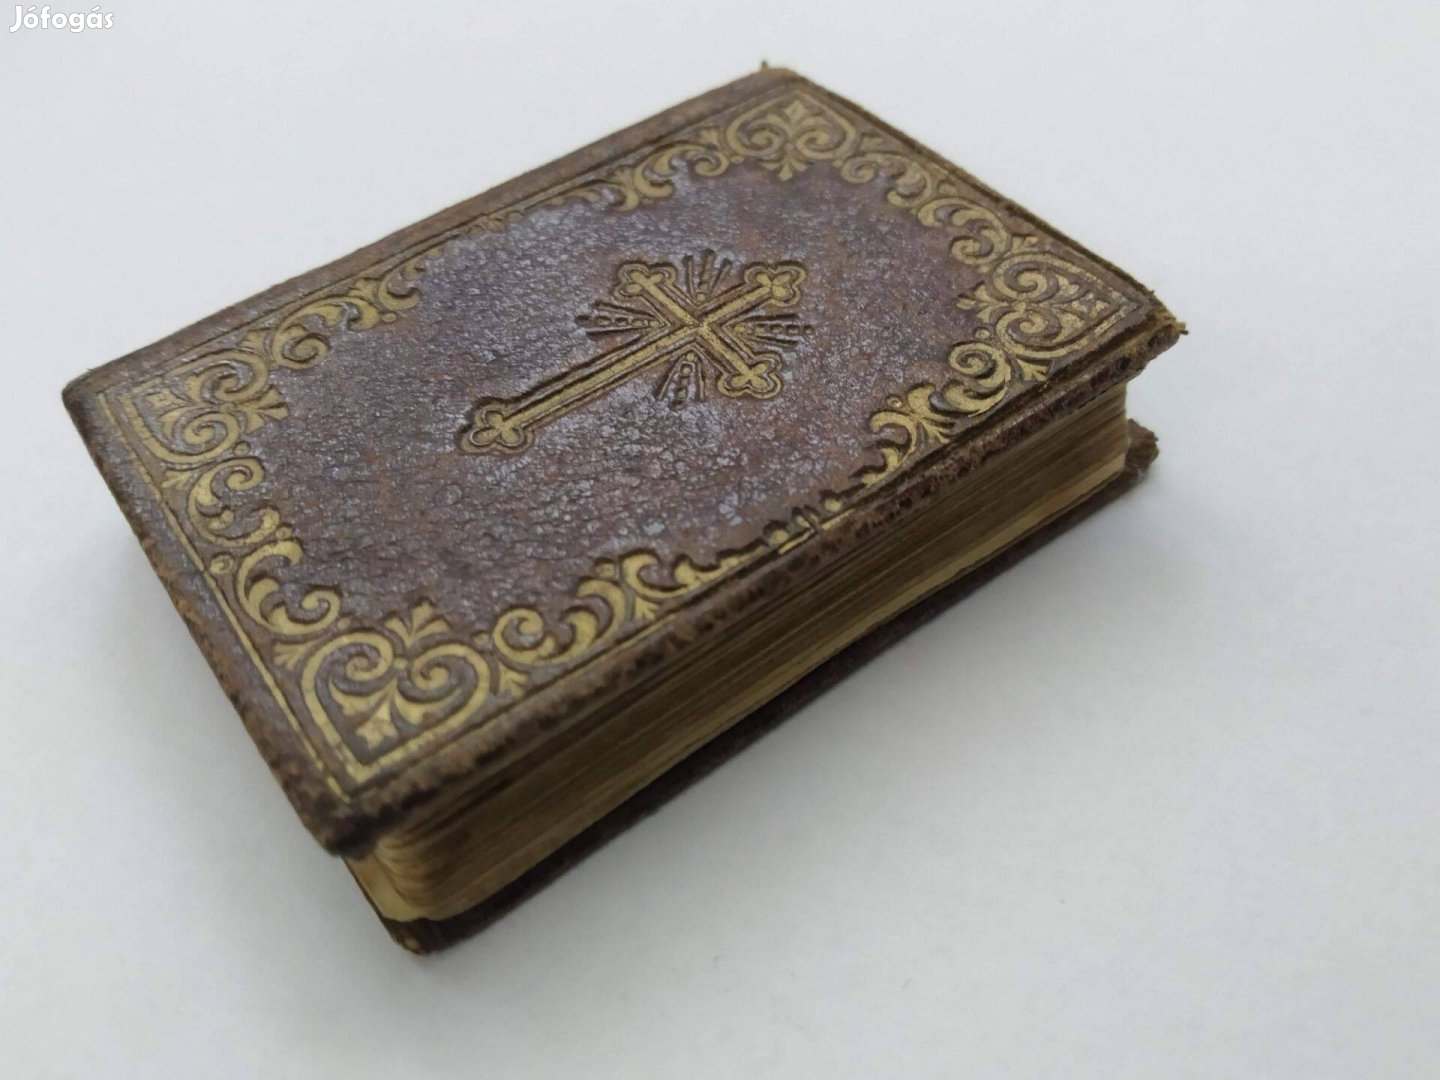 Kath. Imakönyv Minikönyv 1891 antik könyv 6 cm x 5 cm - Igaz gyöngyök